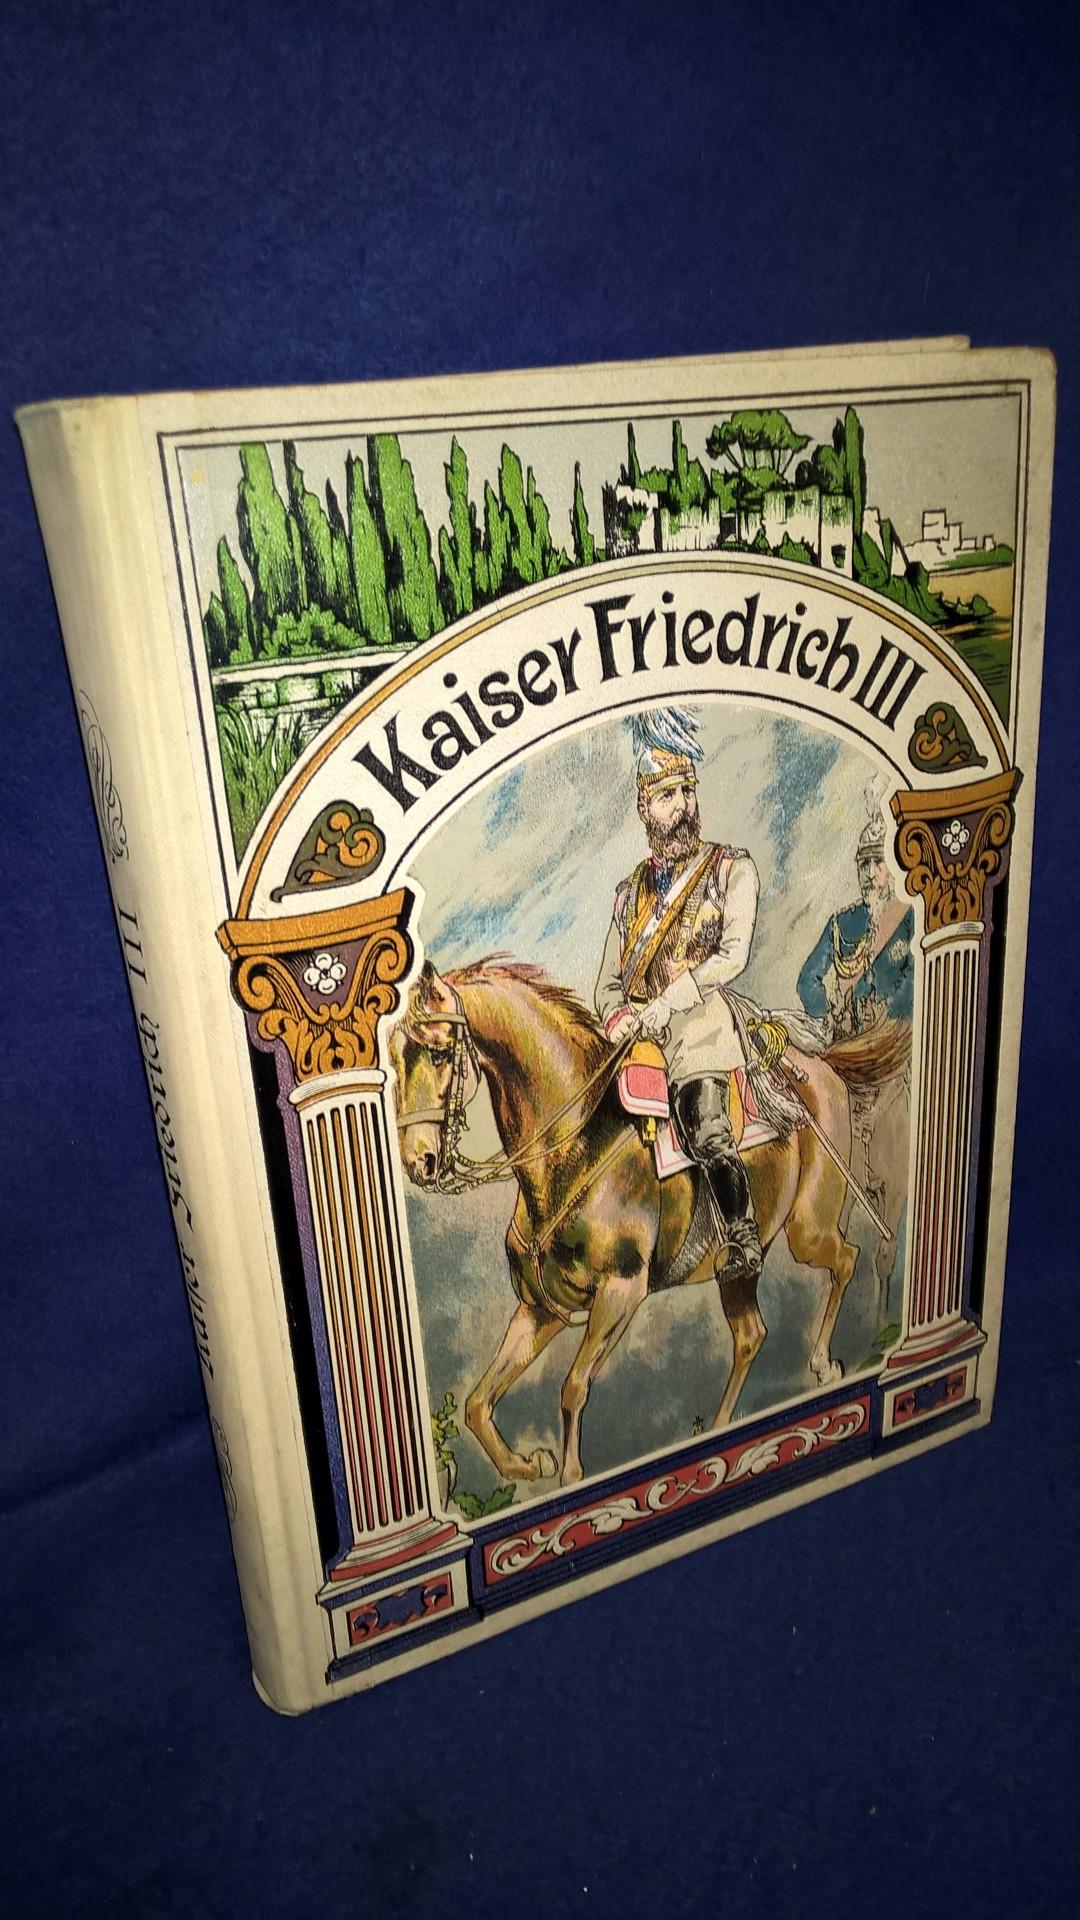 Kaiser Friedrich als Prinz, Feldherr und Herrscher. Ein vaterländisches Lebensbild der deutschen Jugend und dem deutschen Volke.